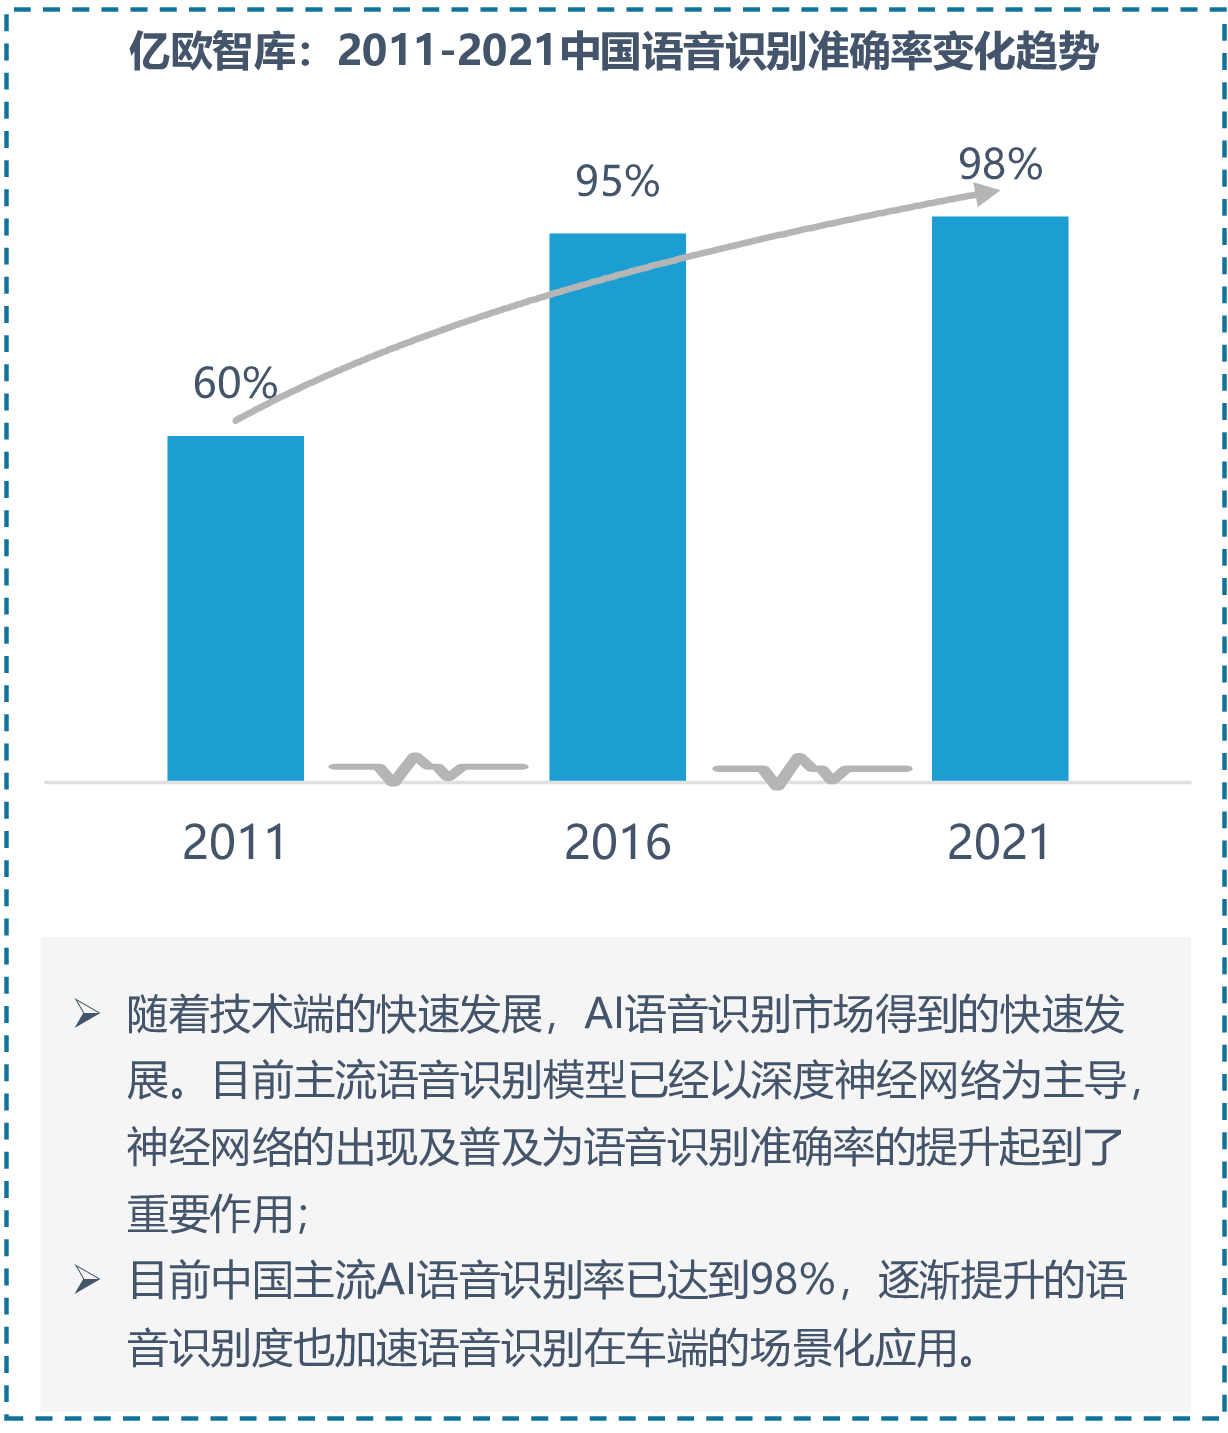 亿欧智库：2011-2021中国语音识别准确率变化趋势